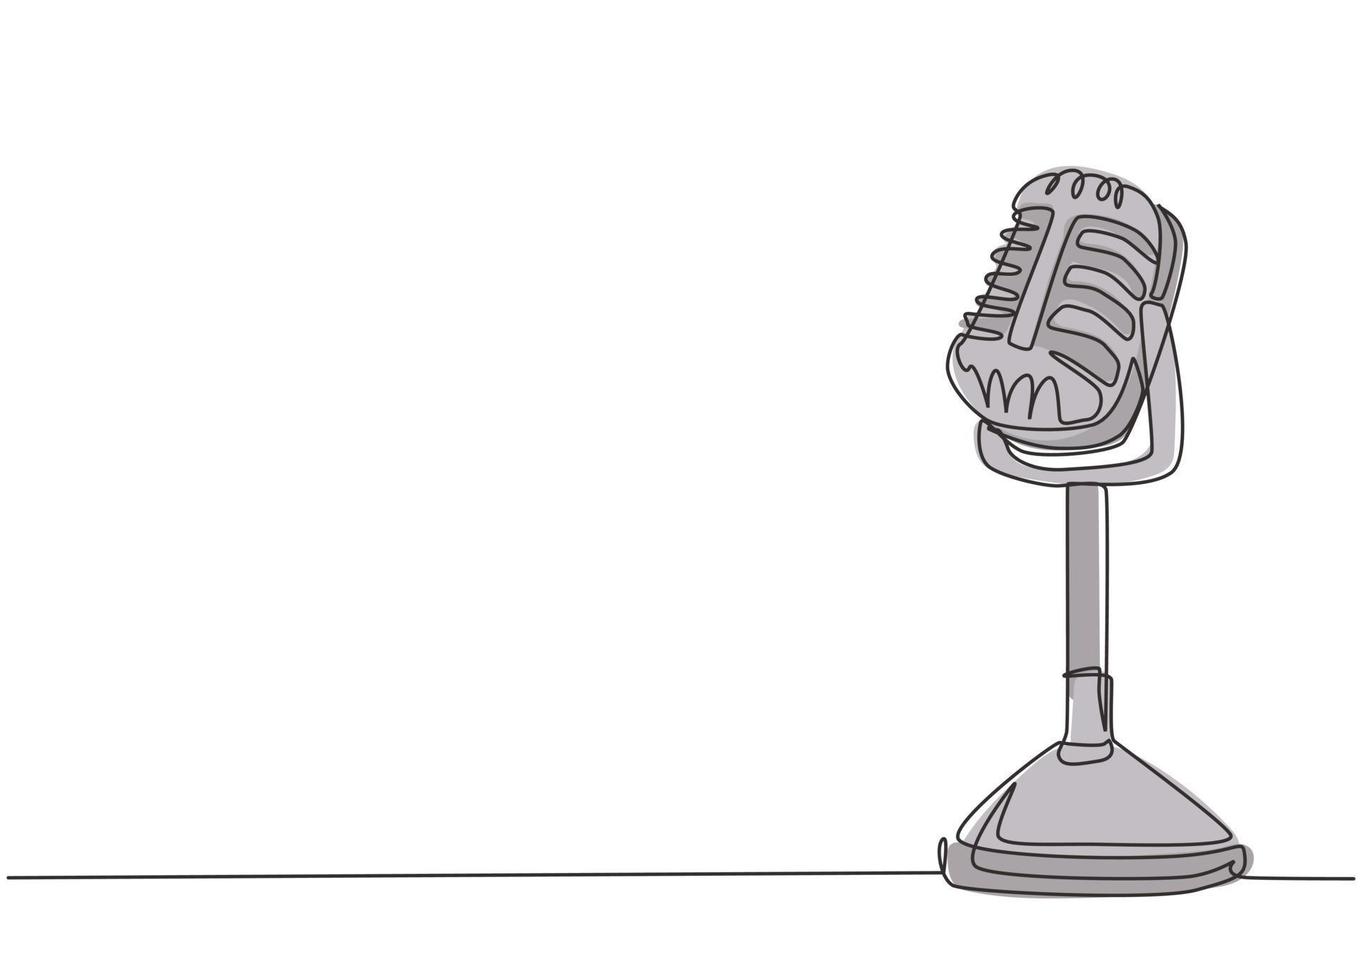 un seul dessin d'un vieux microphone radio classique rétro pour la diffusion. haut-parleur vintage annonceur élément concept ligne continue dessiner conception illustration graphique vectorielle vecteur